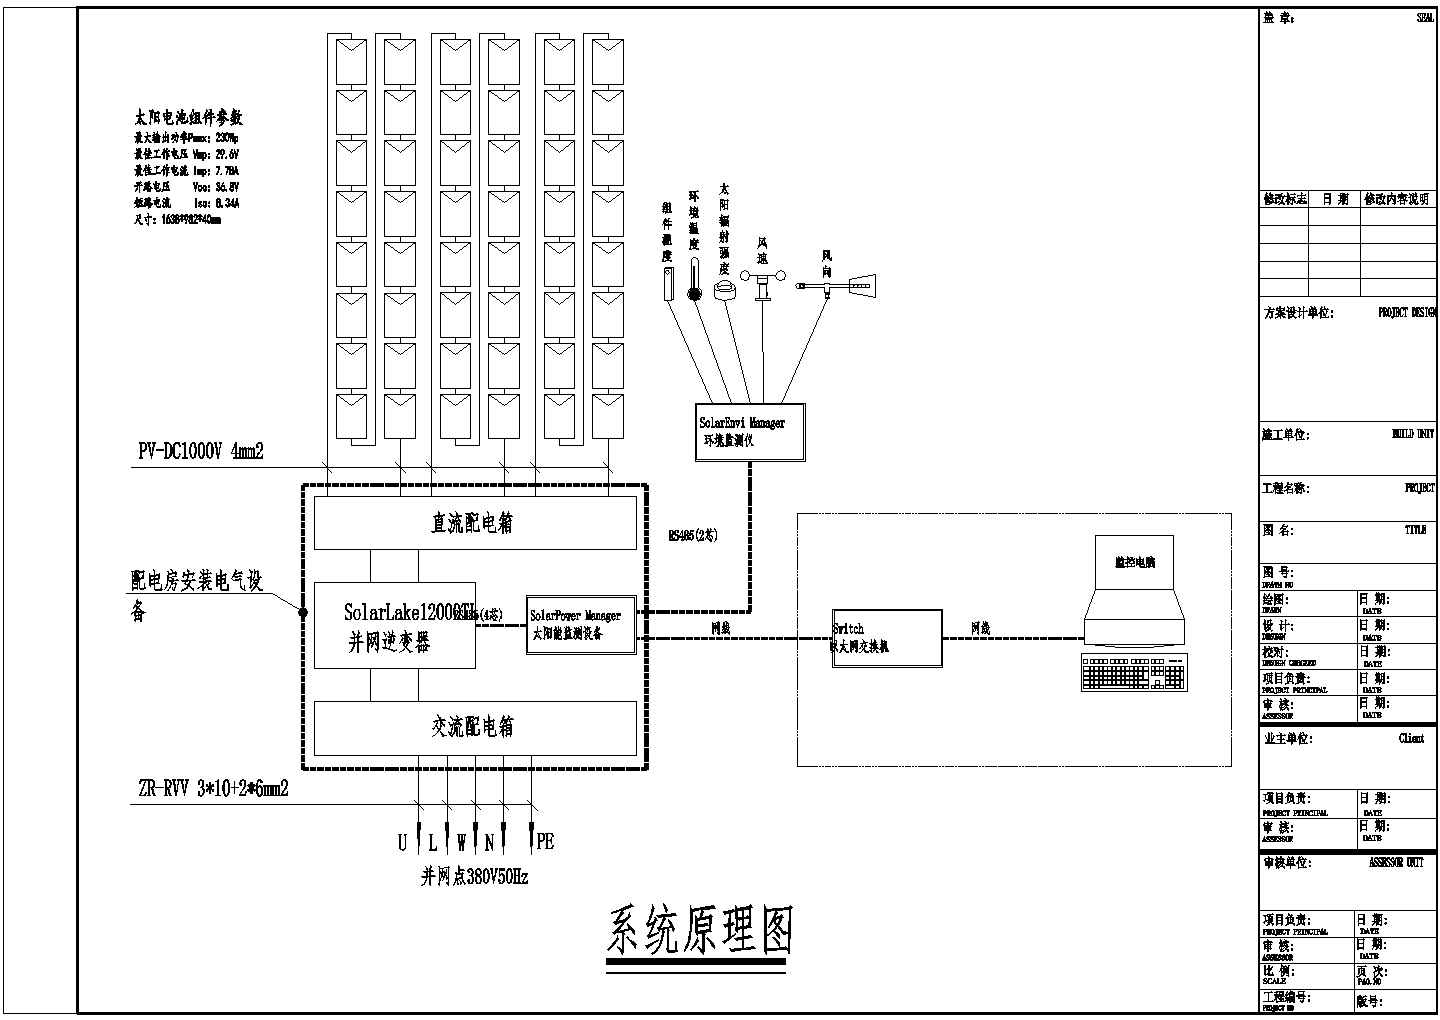 某地区酒店光伏发电设计案例全套cad图纸(含主要配电线路安装走线图)